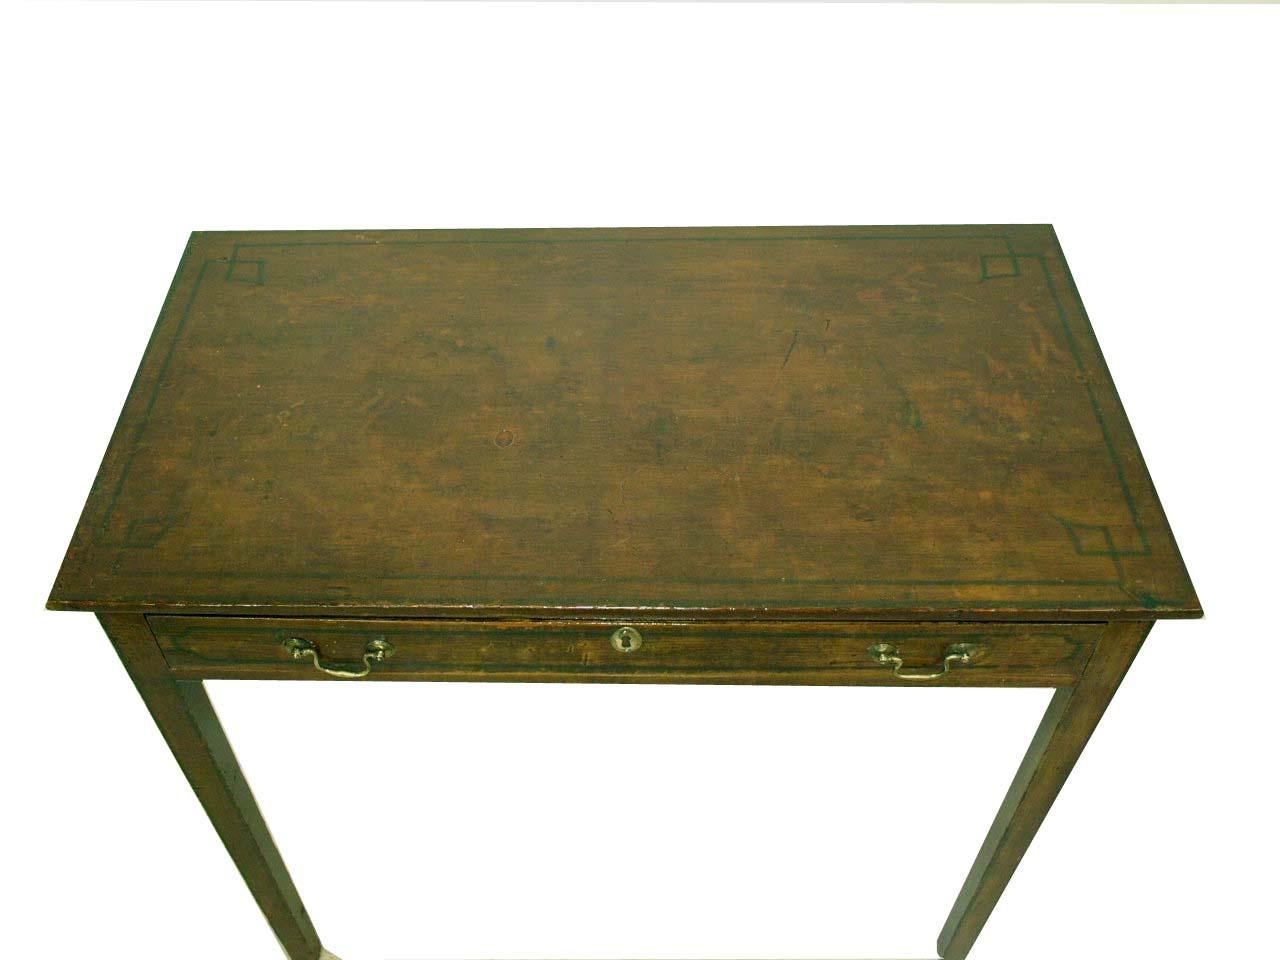 Bemalter englischer Tisch mit einer Schublade und simuliertem Intarsienmuster auf der Platte und der Schublade. Schöne verwitterte Patina.